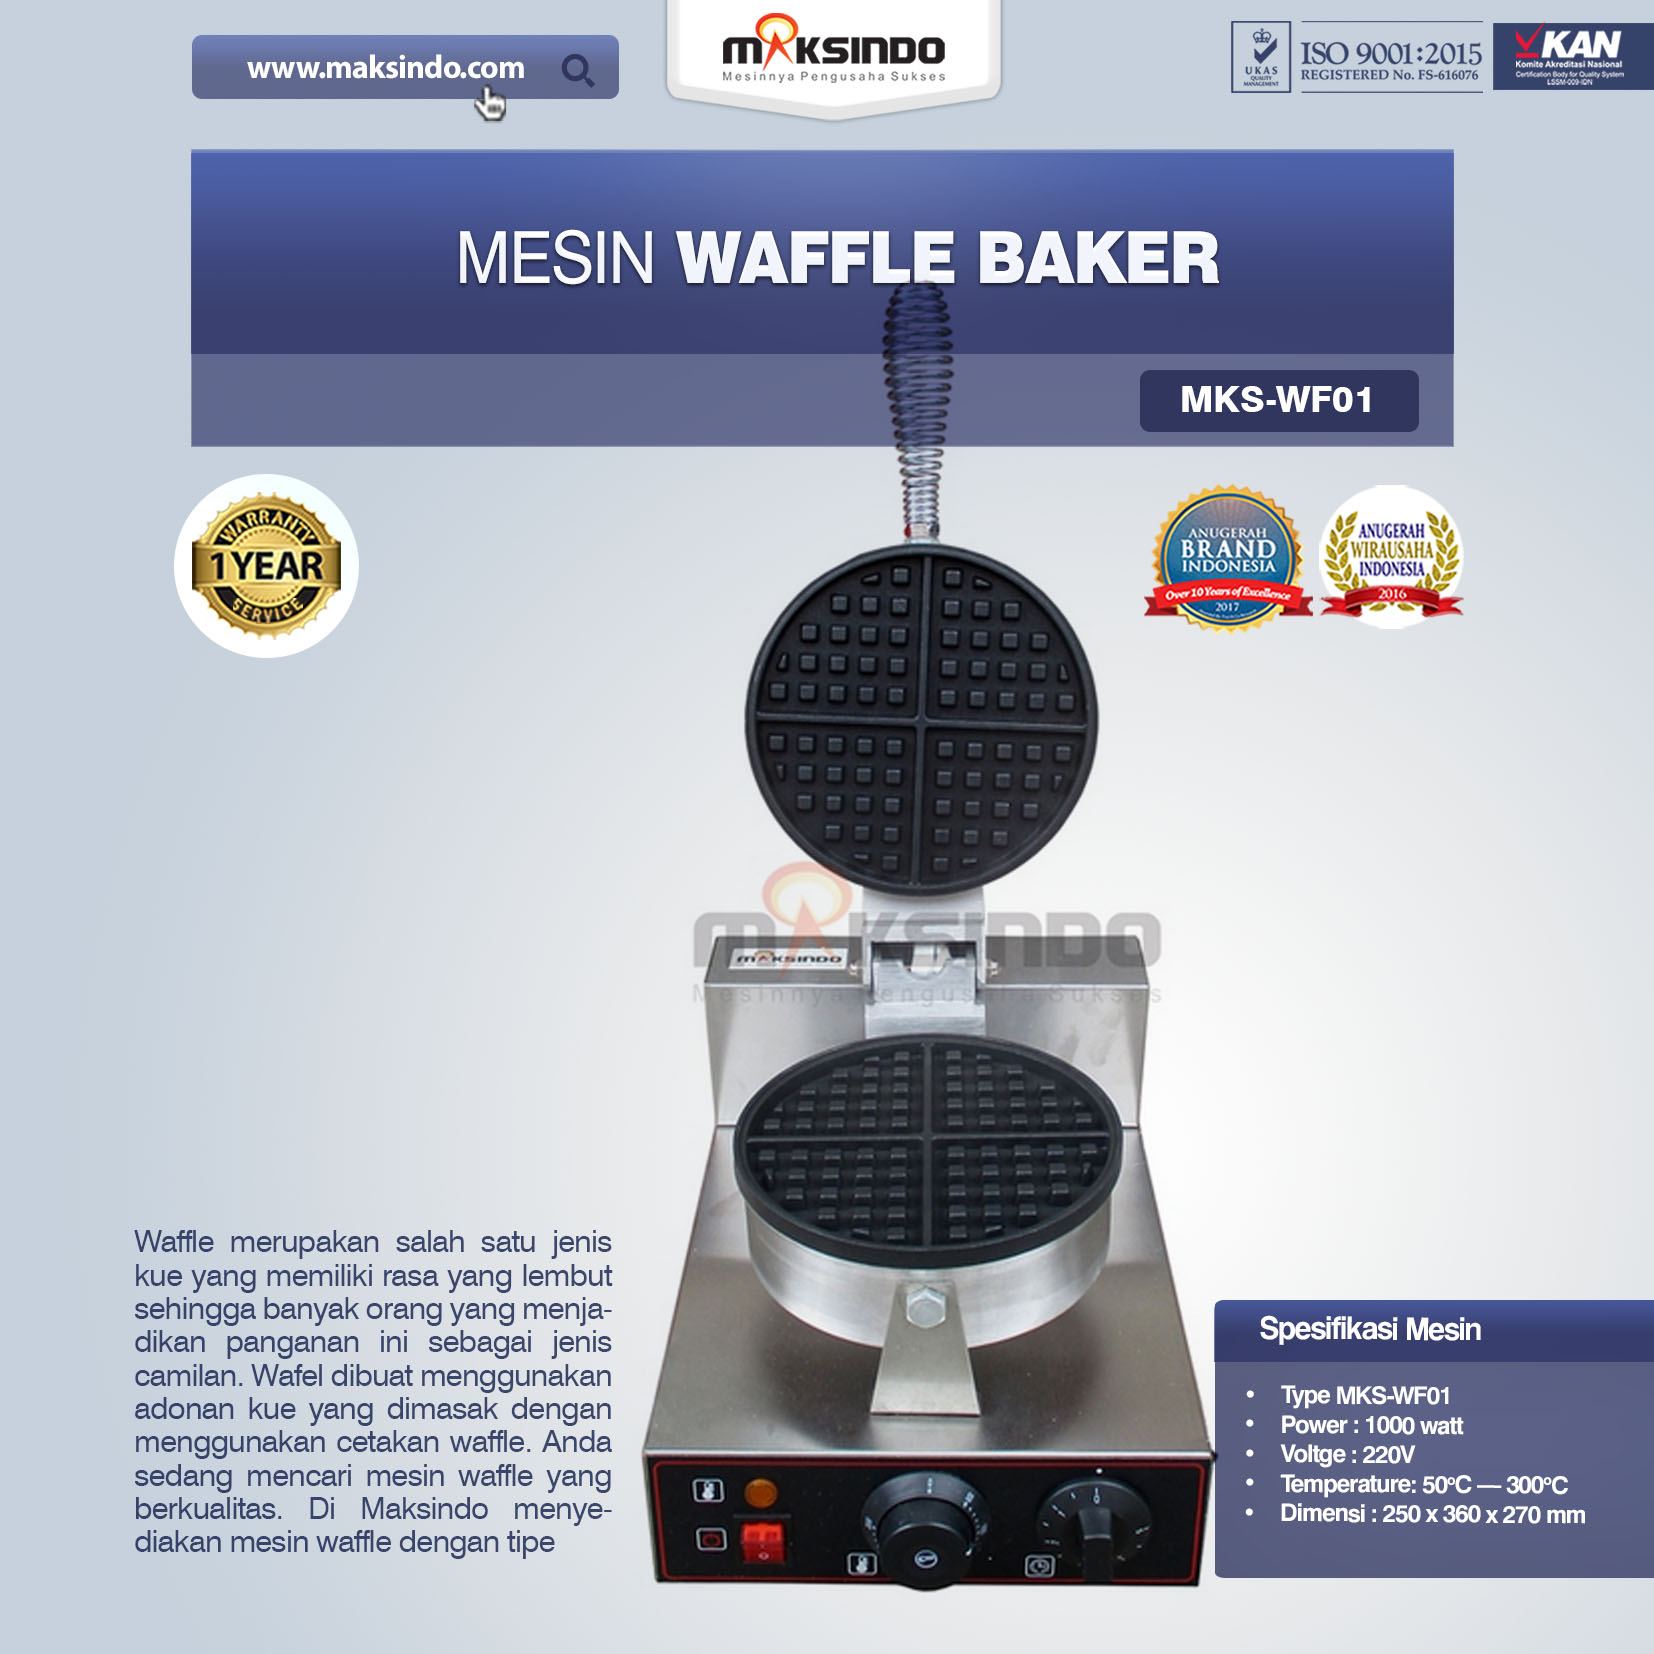 Jual Mesin Waffle Baker MKS-WF01 Di Bogor